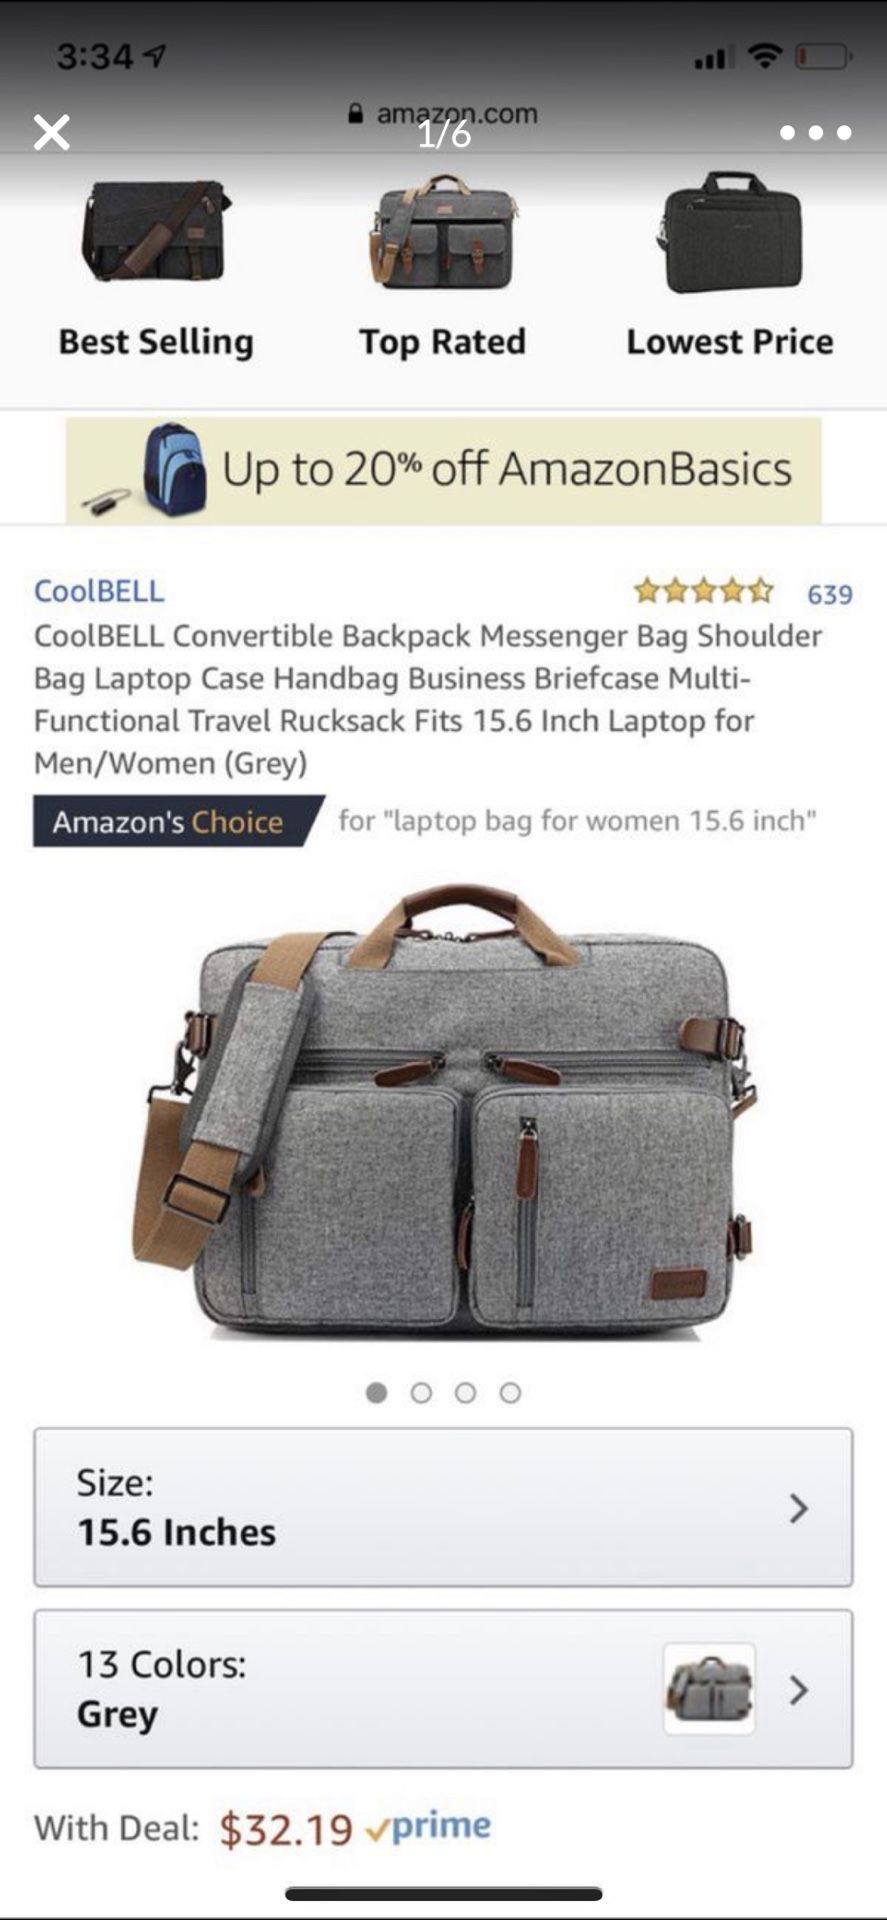 CoolBELL Convertible Backpack Messenger Bag Shoulder Bag Laptop Case Handbag Business Briefcase Multi-Functional Travel Rucksack Fits 15.6 In Laptop